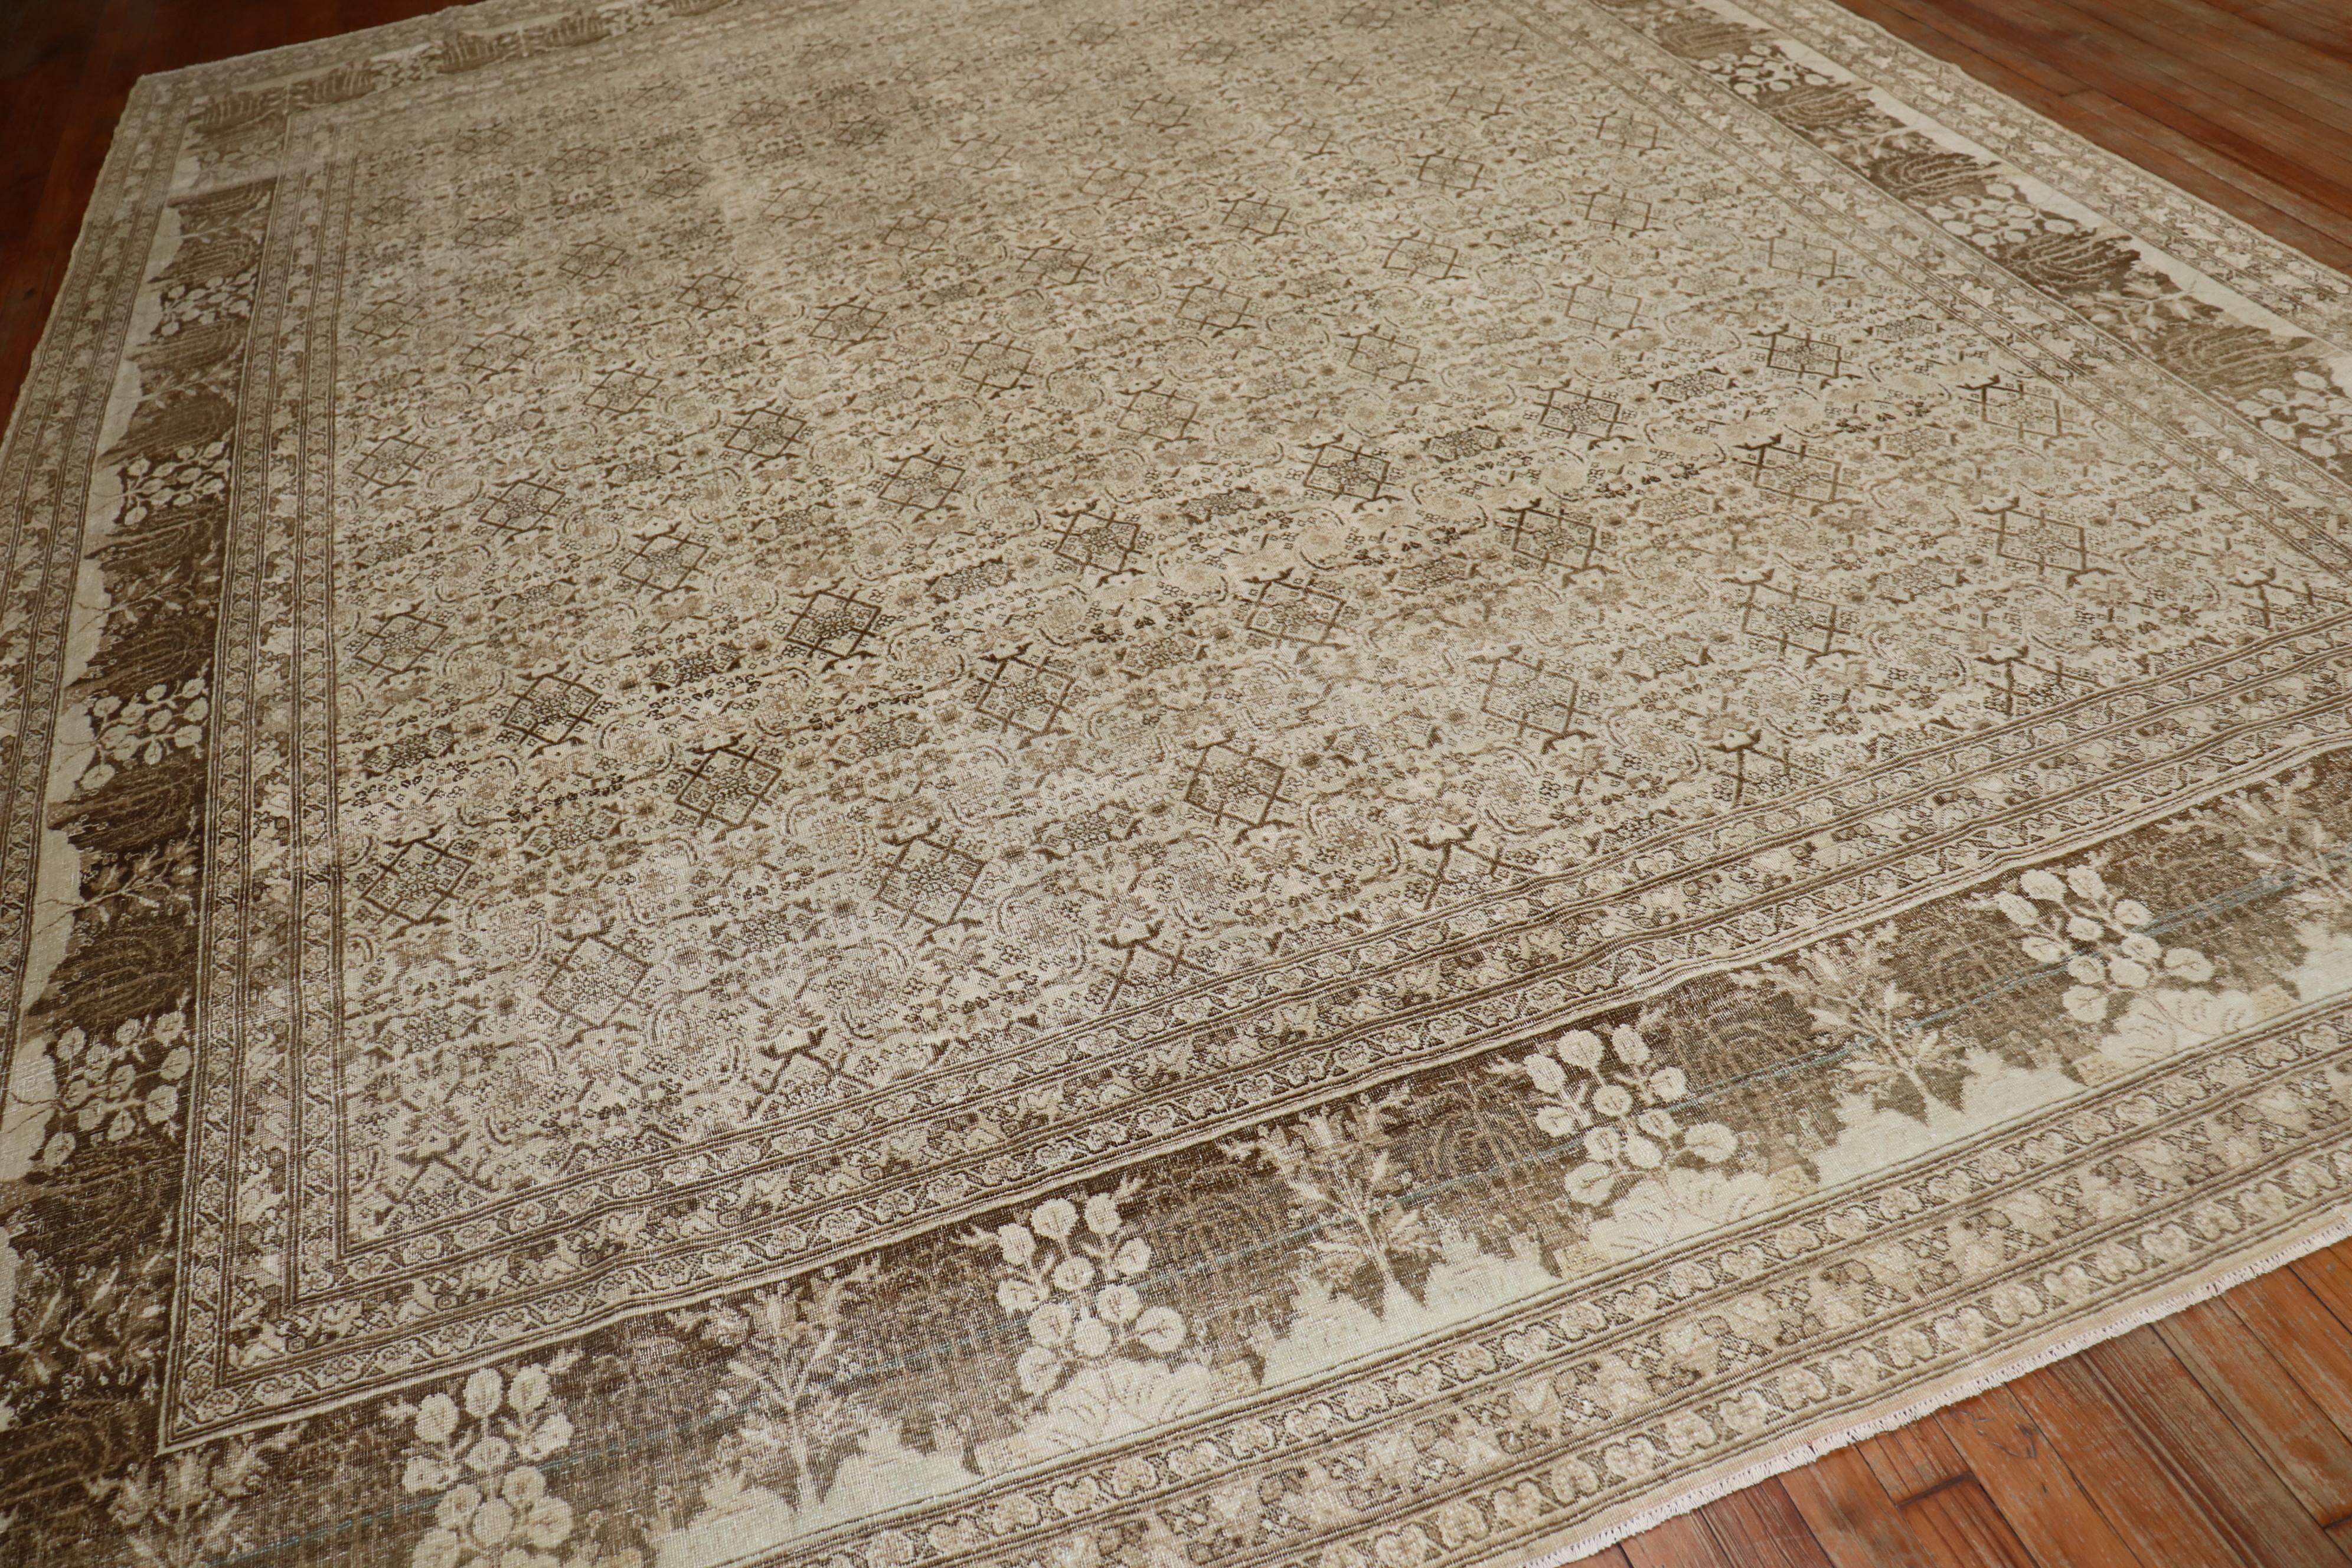 Tapis Persan Tabriz du début du 20ème siècle avec une bordure de saule. Le champ présente le fameux motif herati, qui est un motif caractéristique des tapis de Tabriz du début du XXe siècle et de la fin du XIXe siècle

Mesures : 9'3'' x